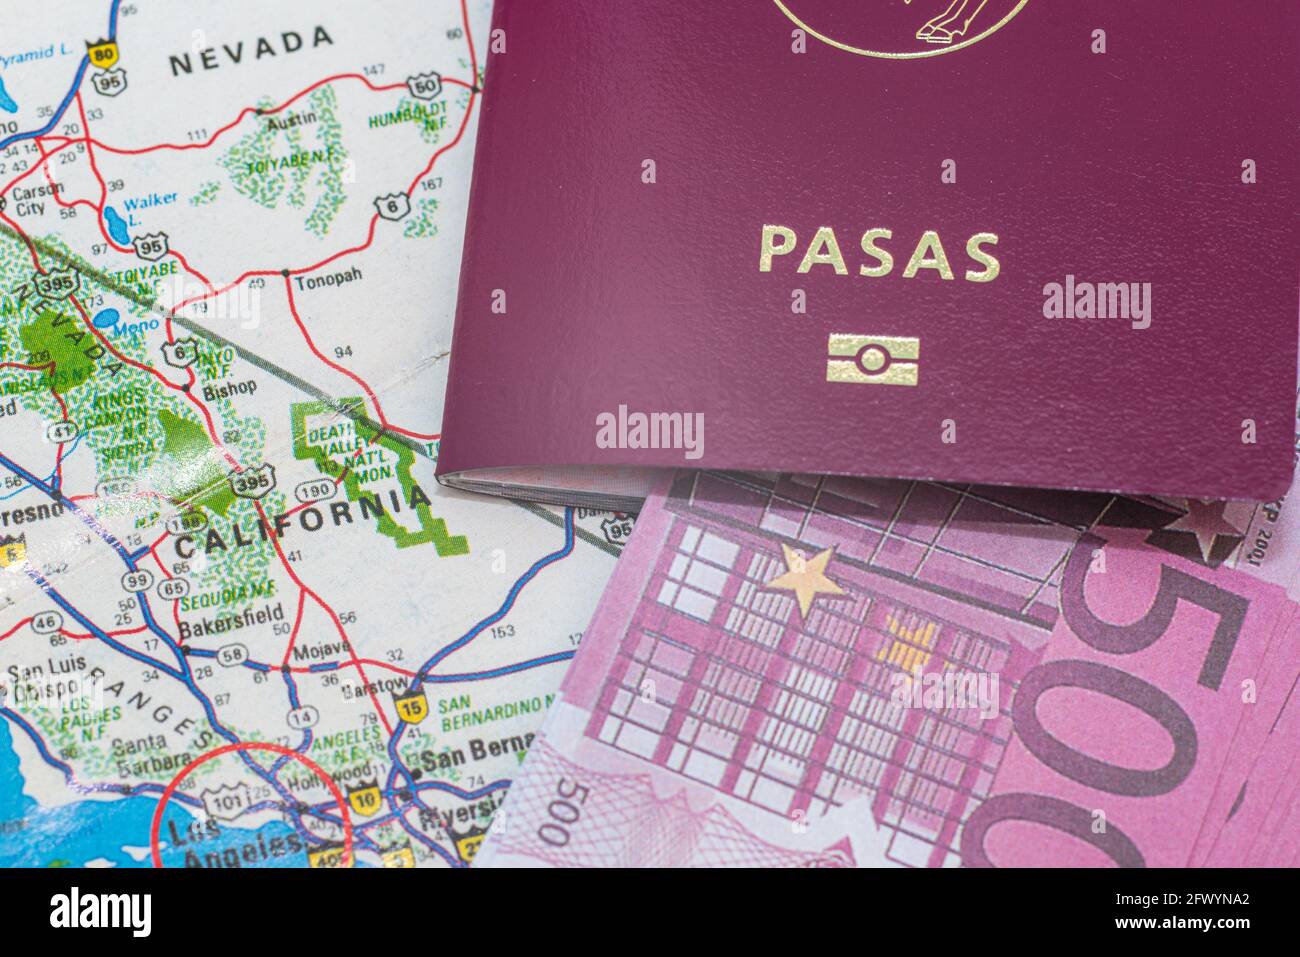 Passaporto lituano 500 euro bollette sulla mappa. Focus sul continente nordamericano della California. Emigrazione, viaggio, concetto di destinazione.Vista dall'alto. Foto Stock